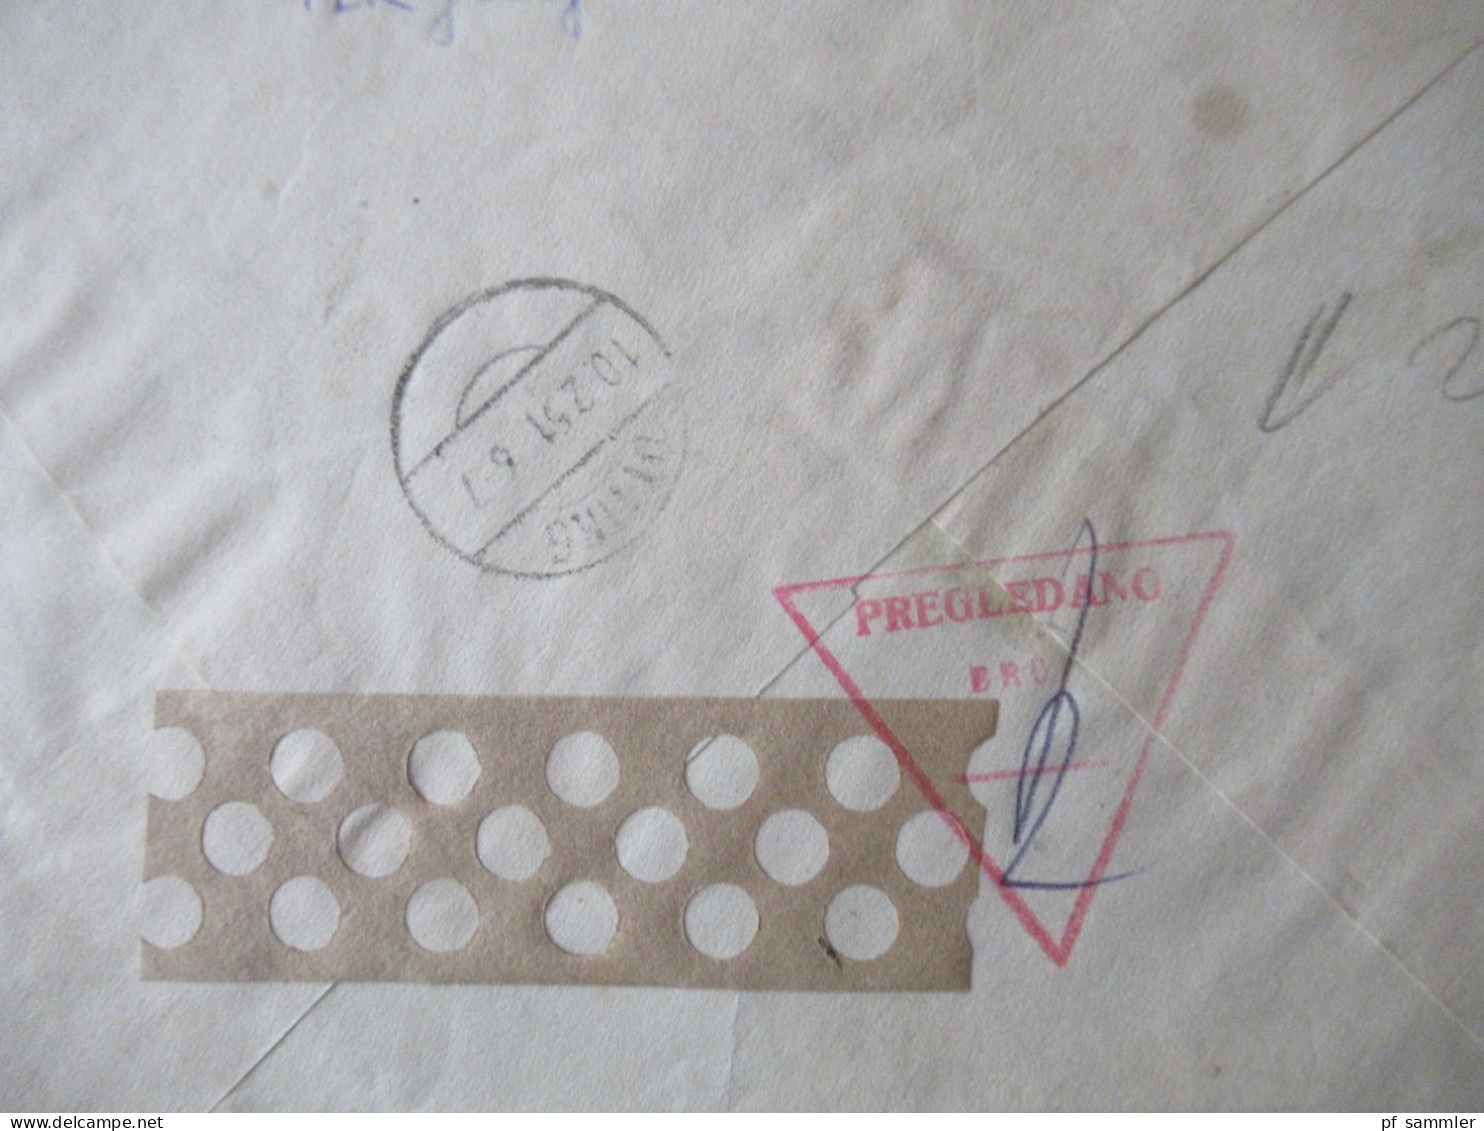 Jugoslawien 1947 / 51 Flugpostmarken Mi.Nr.519 (4er Block) MeF Einschreiben Beograd - Otting Mit Ank. Stempel - Lettres & Documents